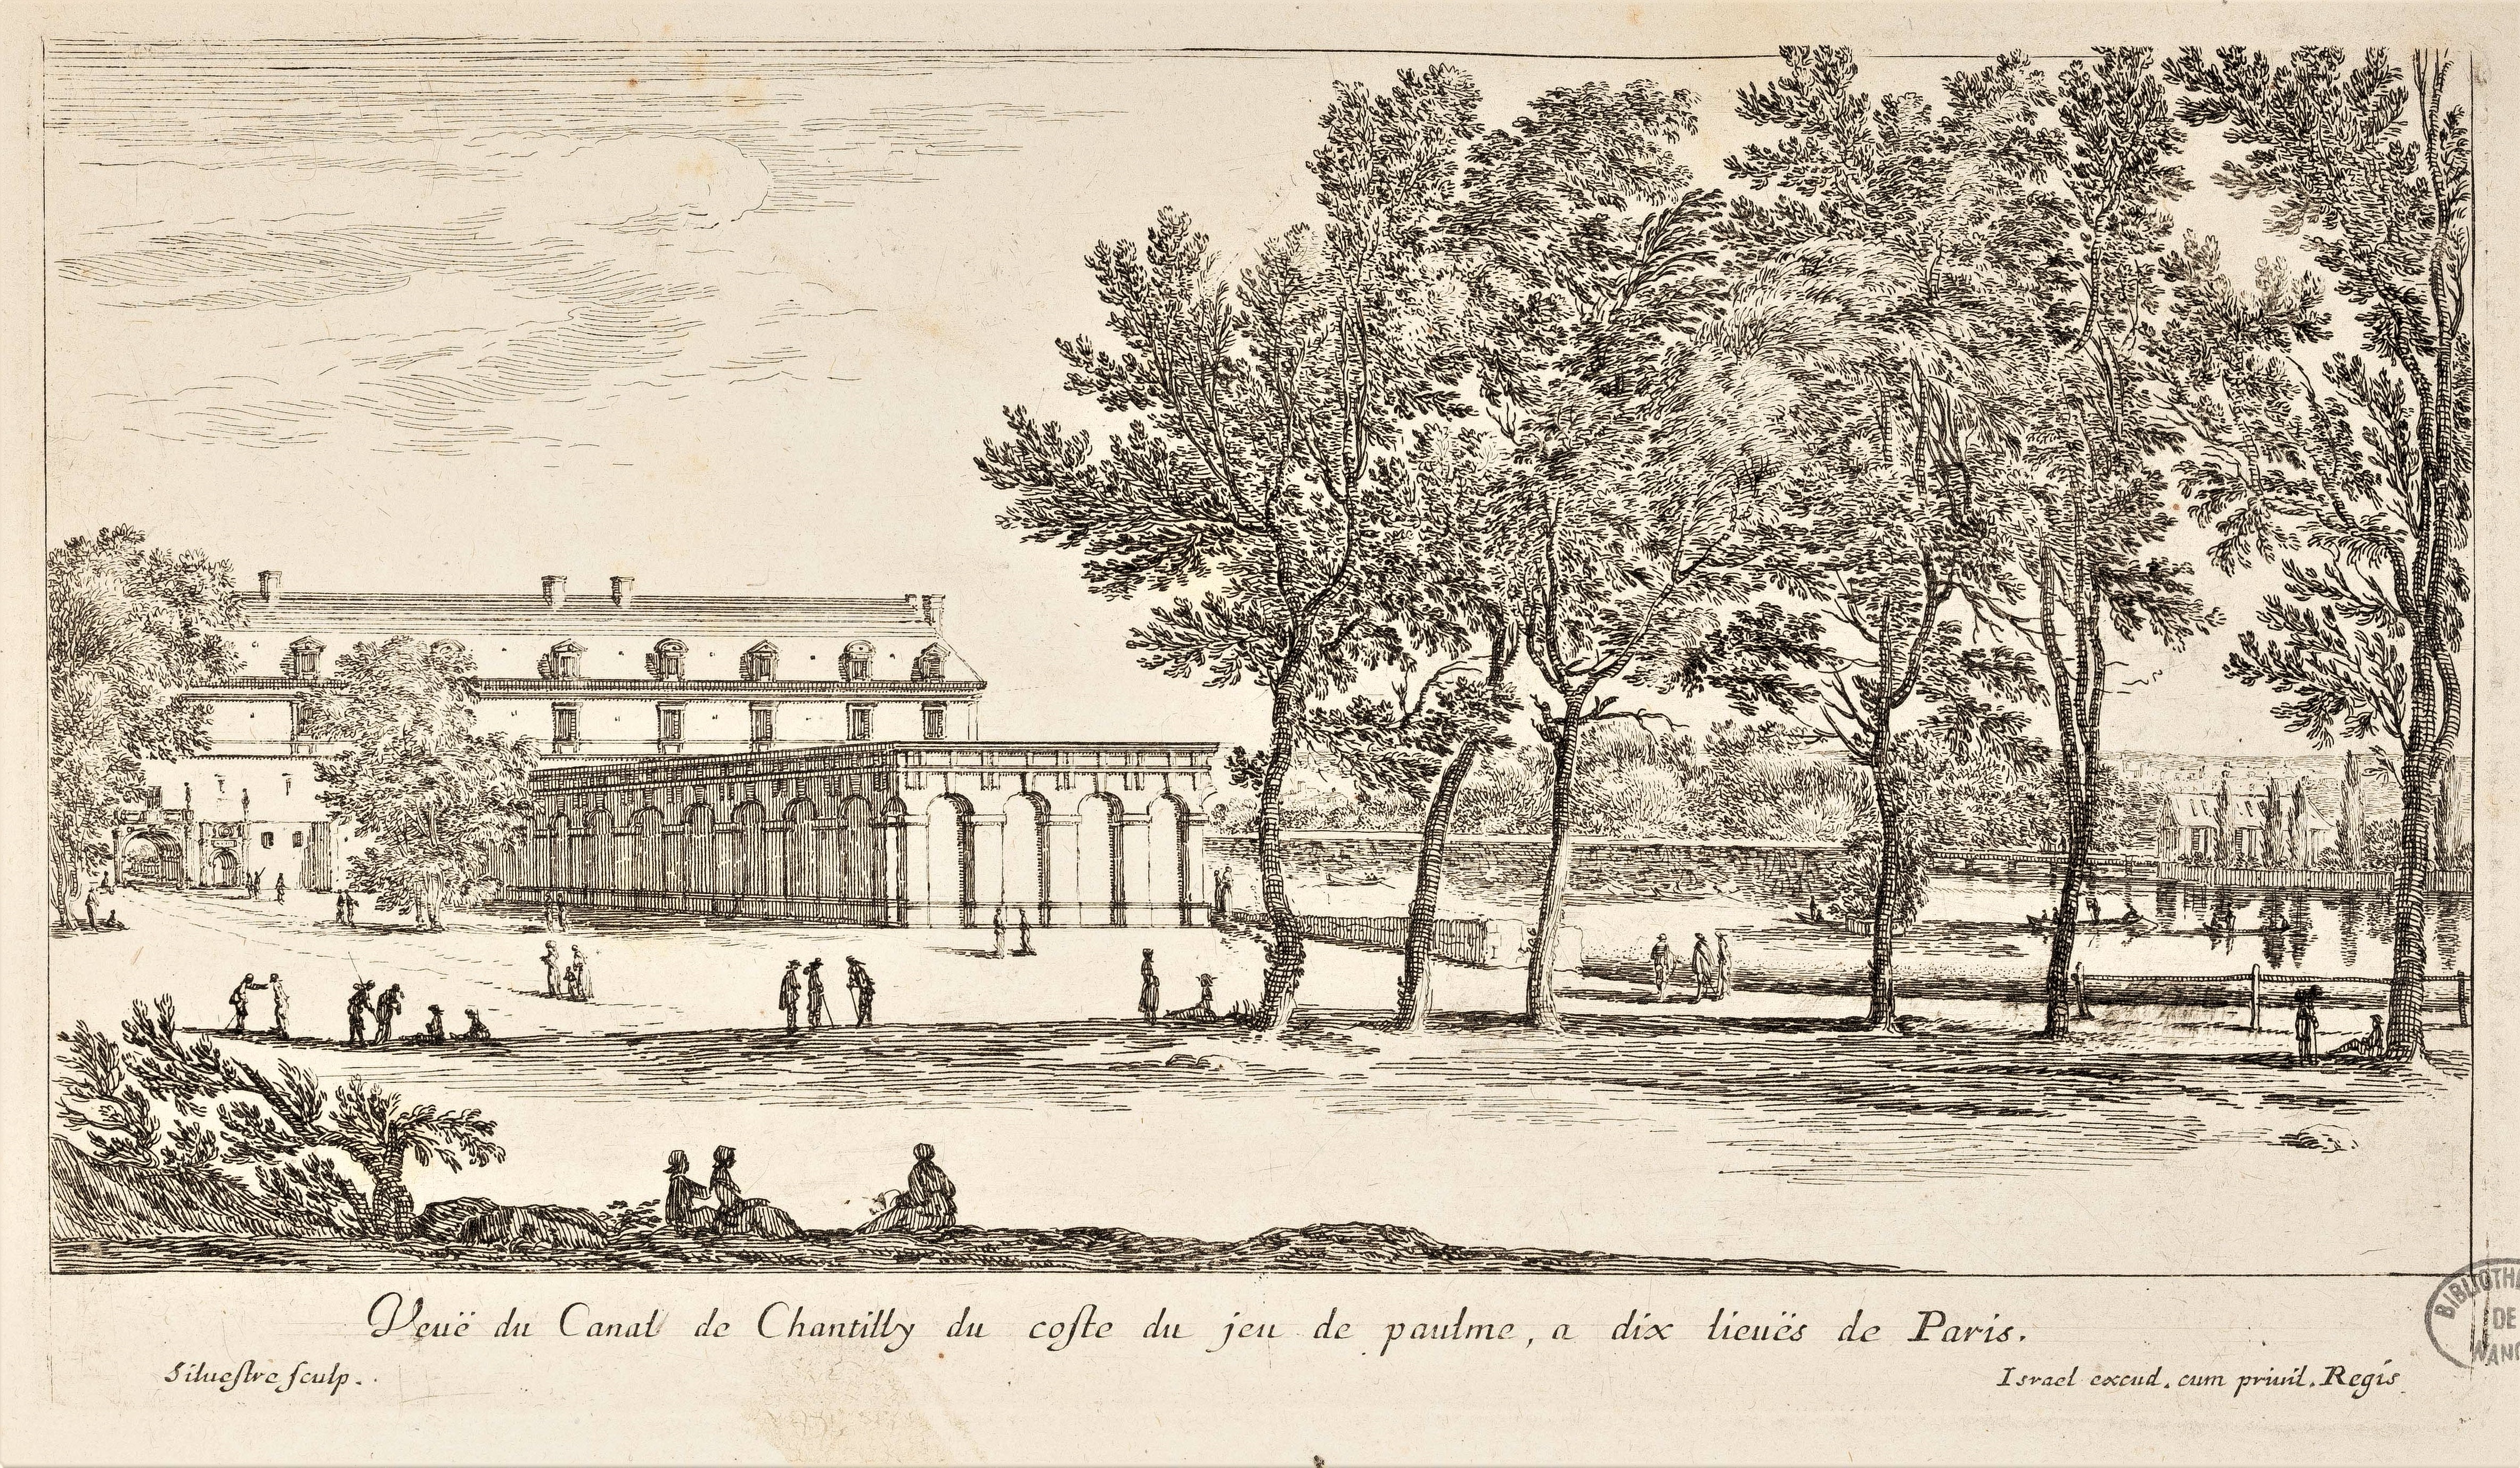 Israël Silvestre : Veuë du Canal de Chantilly du coste du jeu de paume, a dix lieuës de Paris.